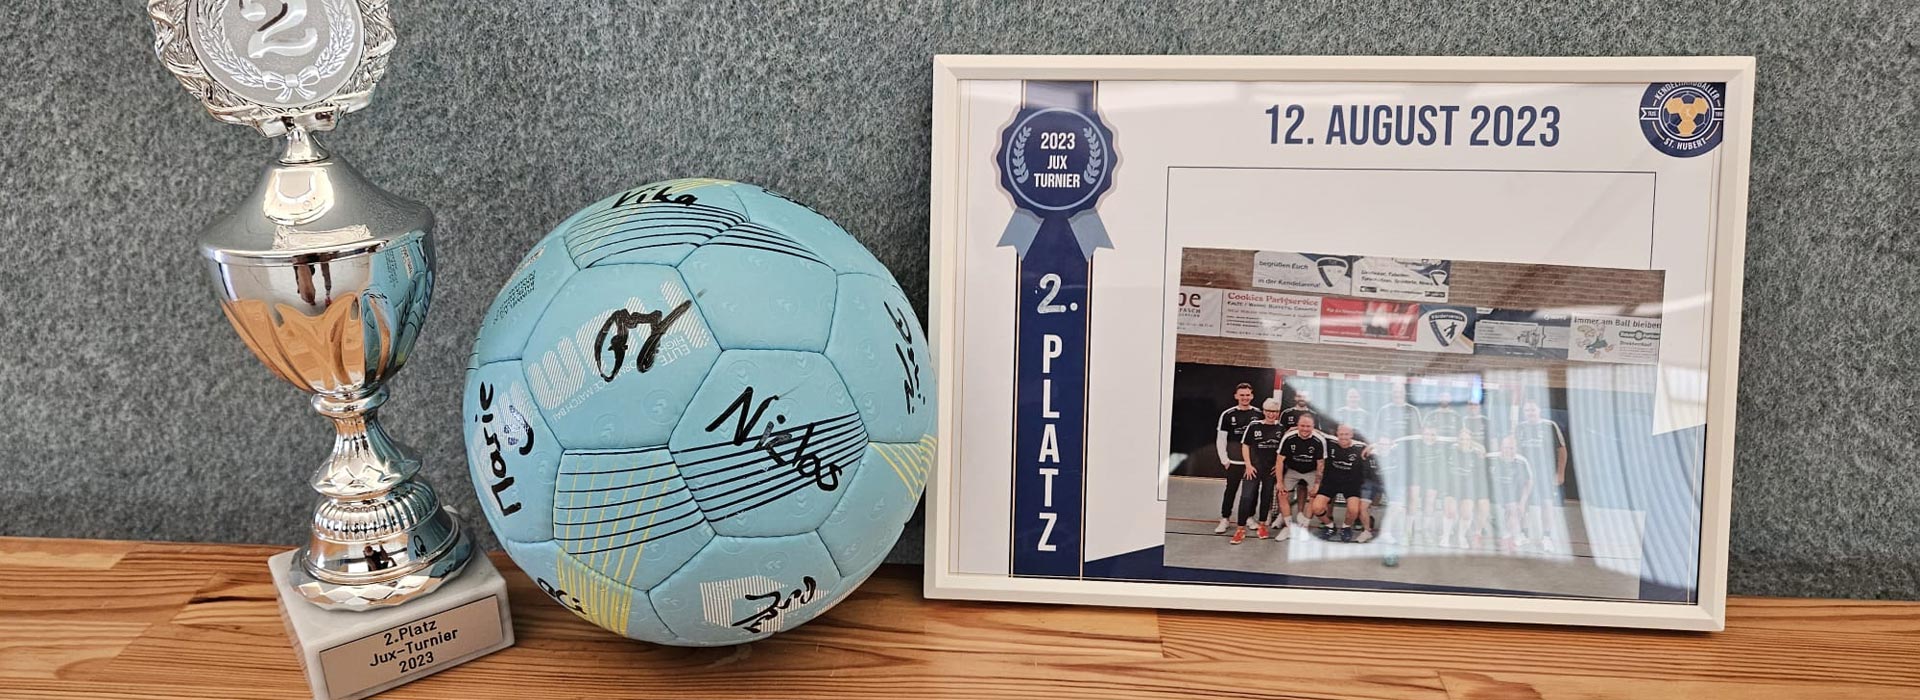 Pokal, 2. Platz, Ball und Urkunde vom Handballturnier